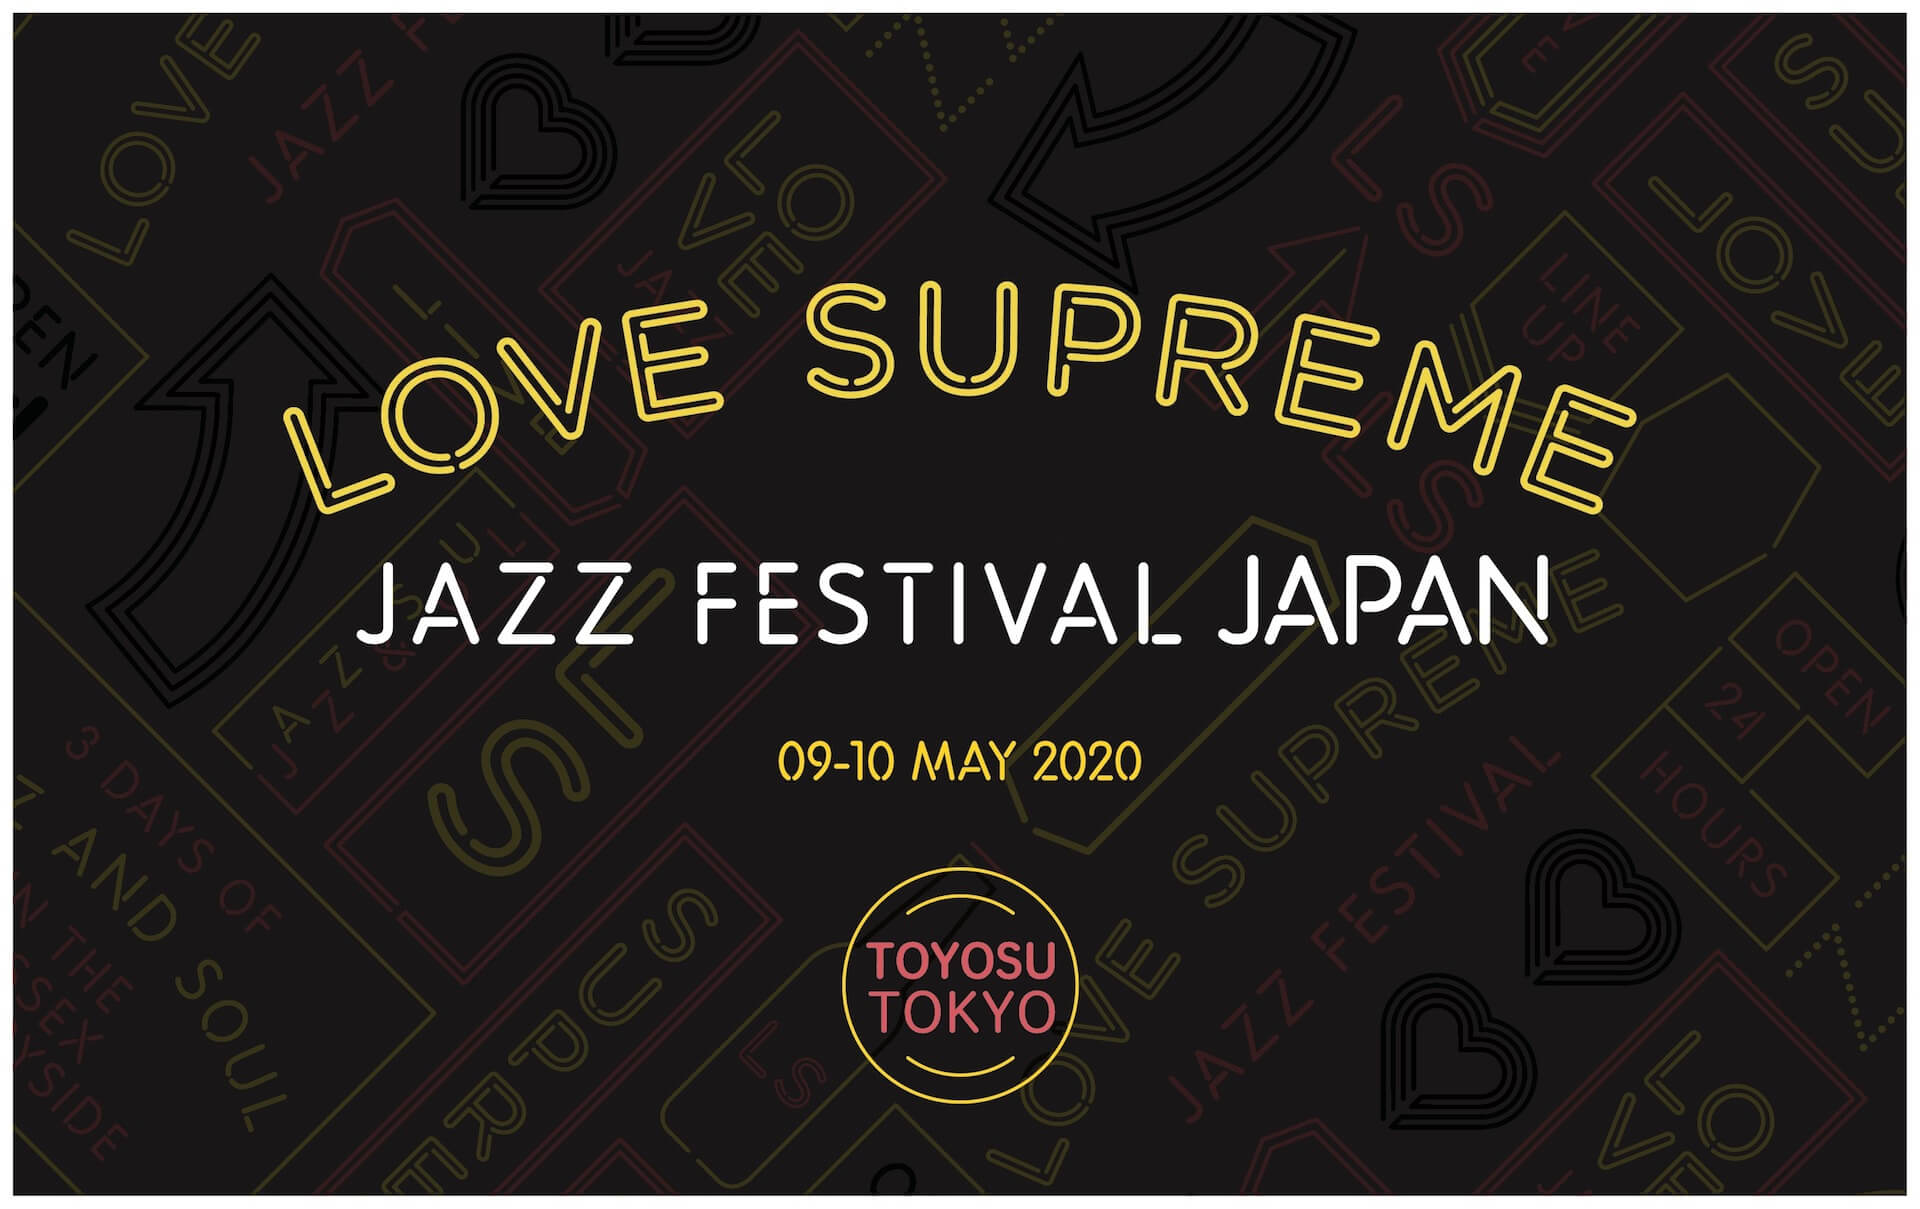 ストリートなイベント 東京 Love Supreme Jazz Festival Japan 2020 ヨーロッパ最大規模の野外ジャズフェスが5月に日本上陸 Represent